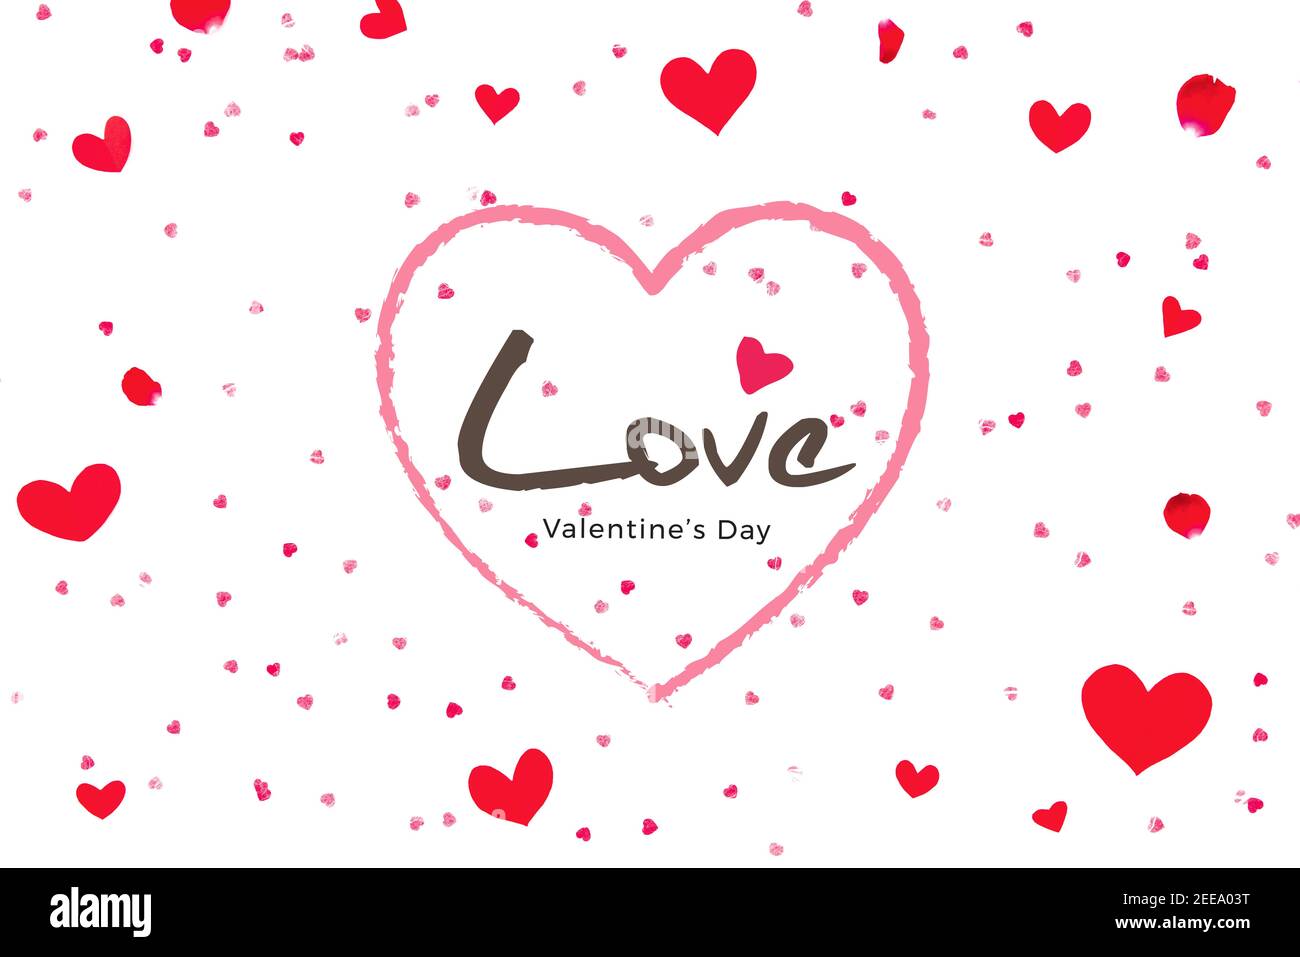 Love San Valentino saluto testo su sfondo bianco con forme del cuore e petali di rosa Foto Stock